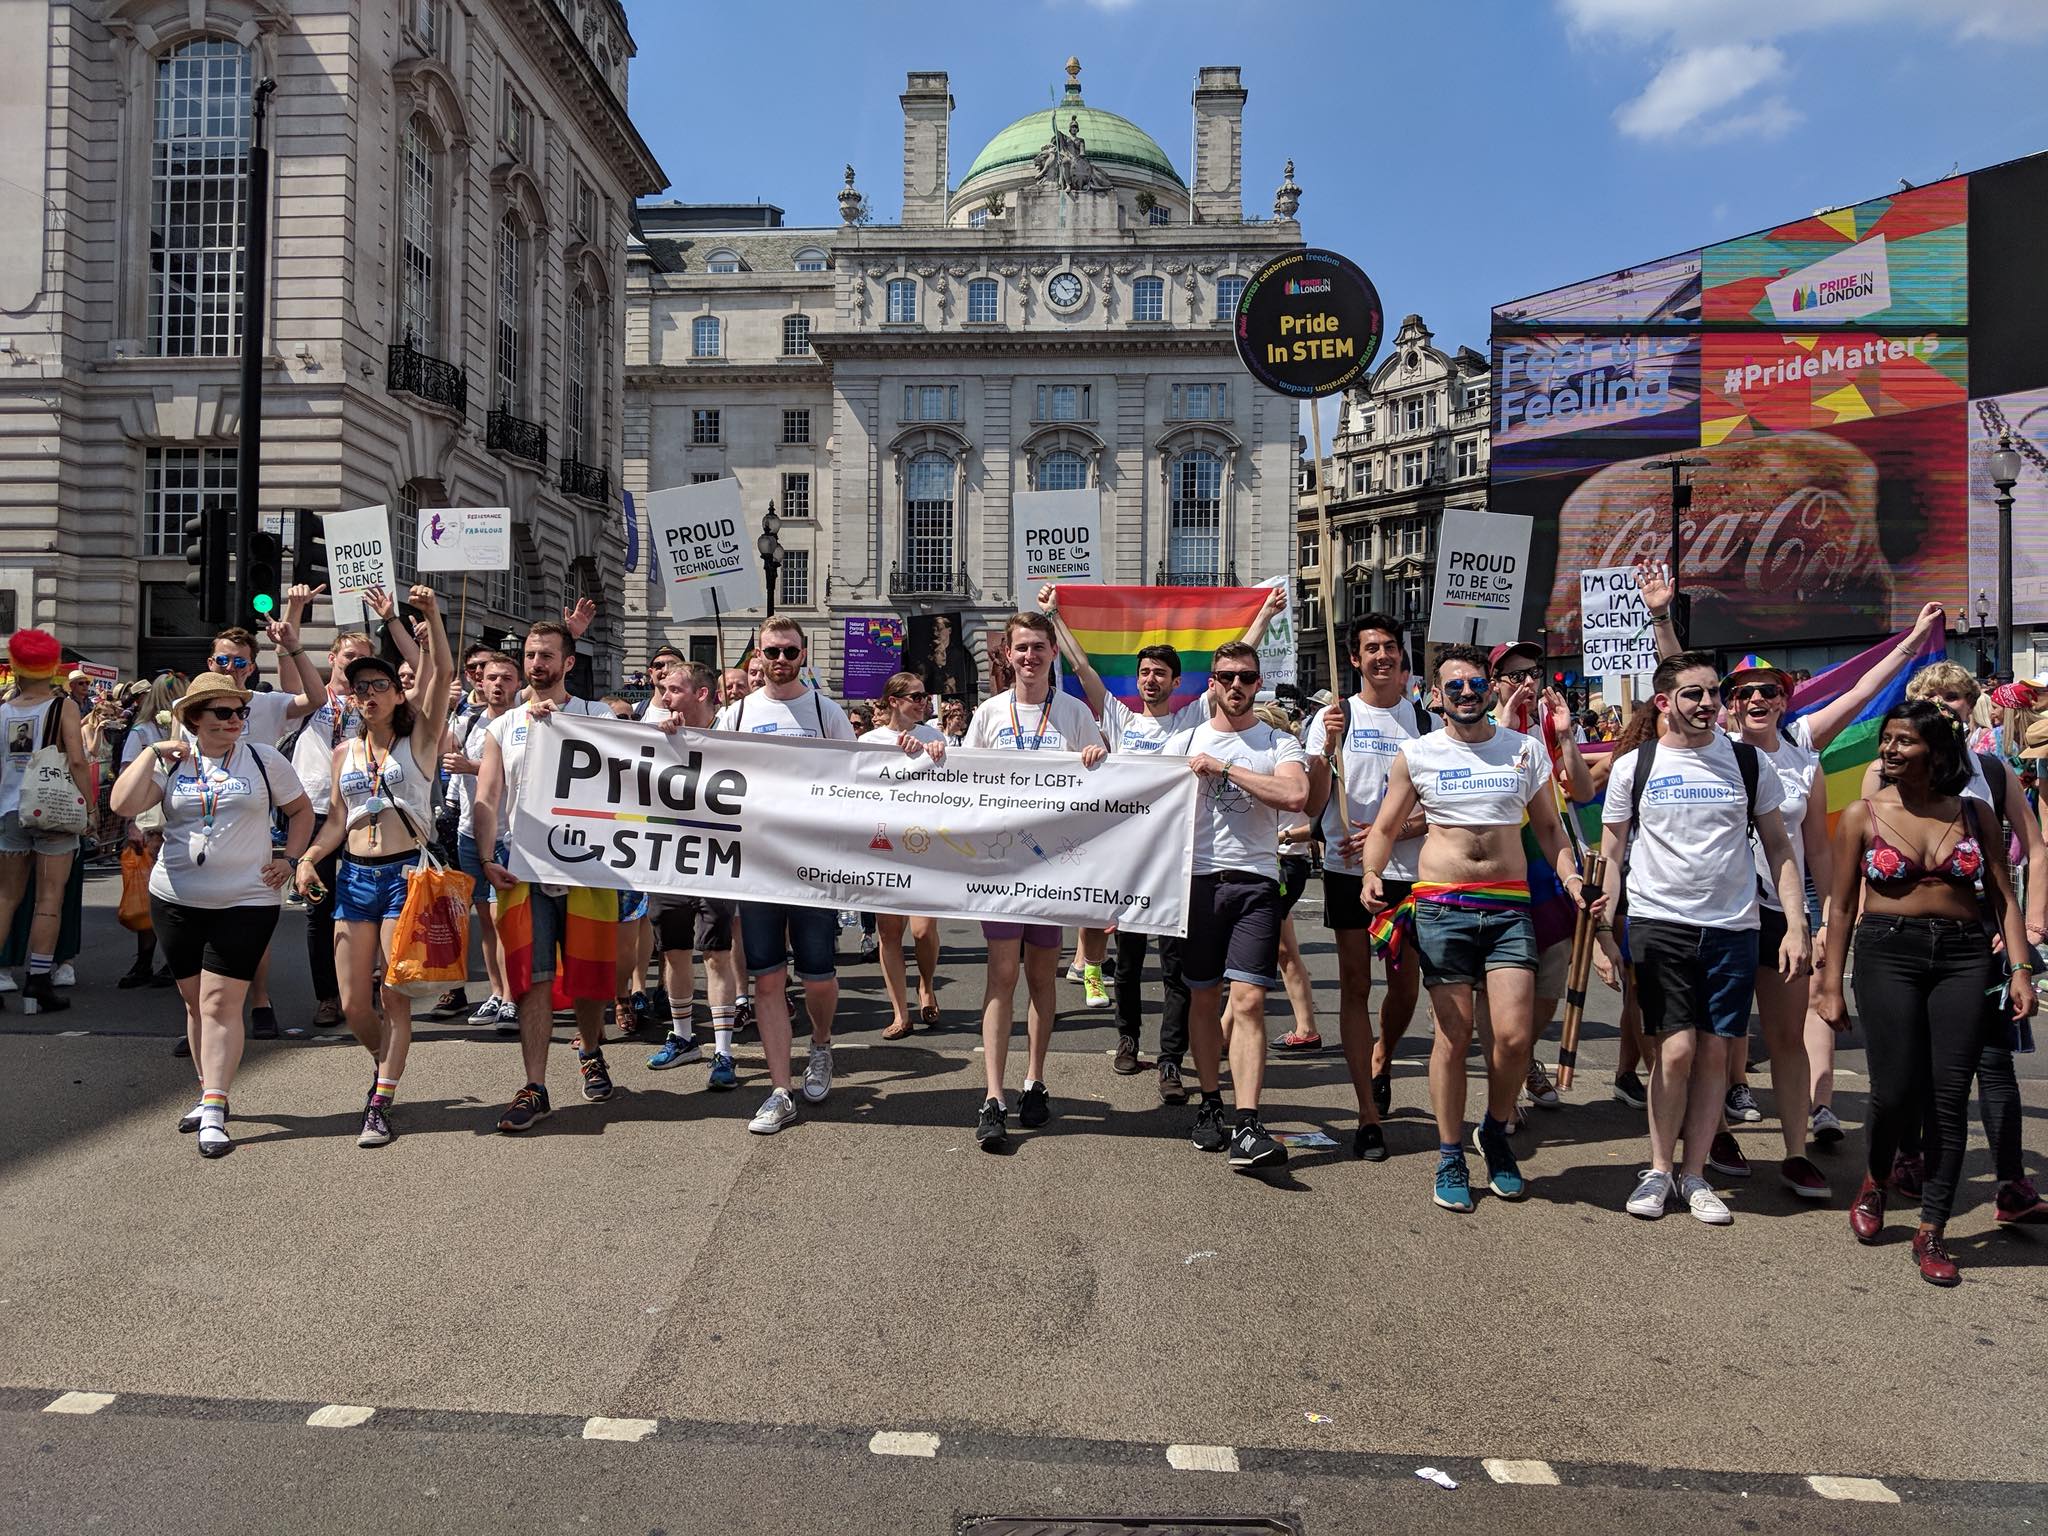 Pride in STEM at London Pride